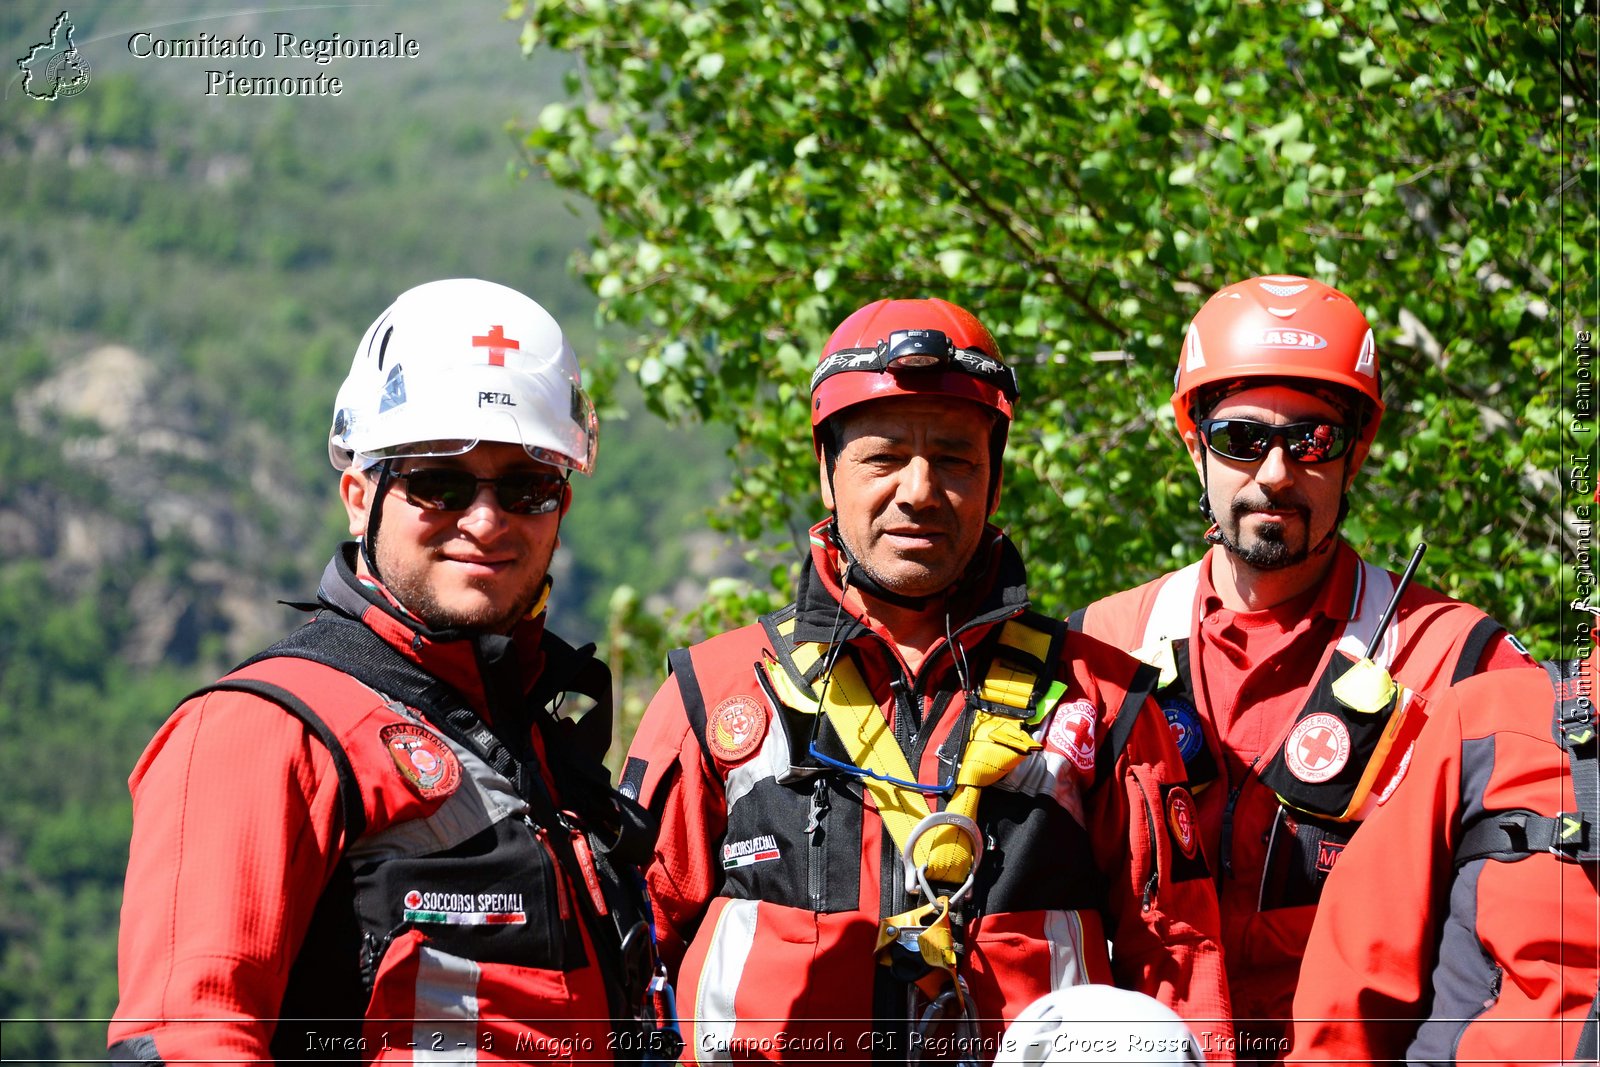 Ivrea 1 - 2 - 3 Maggio 2015 - CampoScuola CRI Regionale - Croce Rossa Italiana- Comitato Regionale del Piemonte